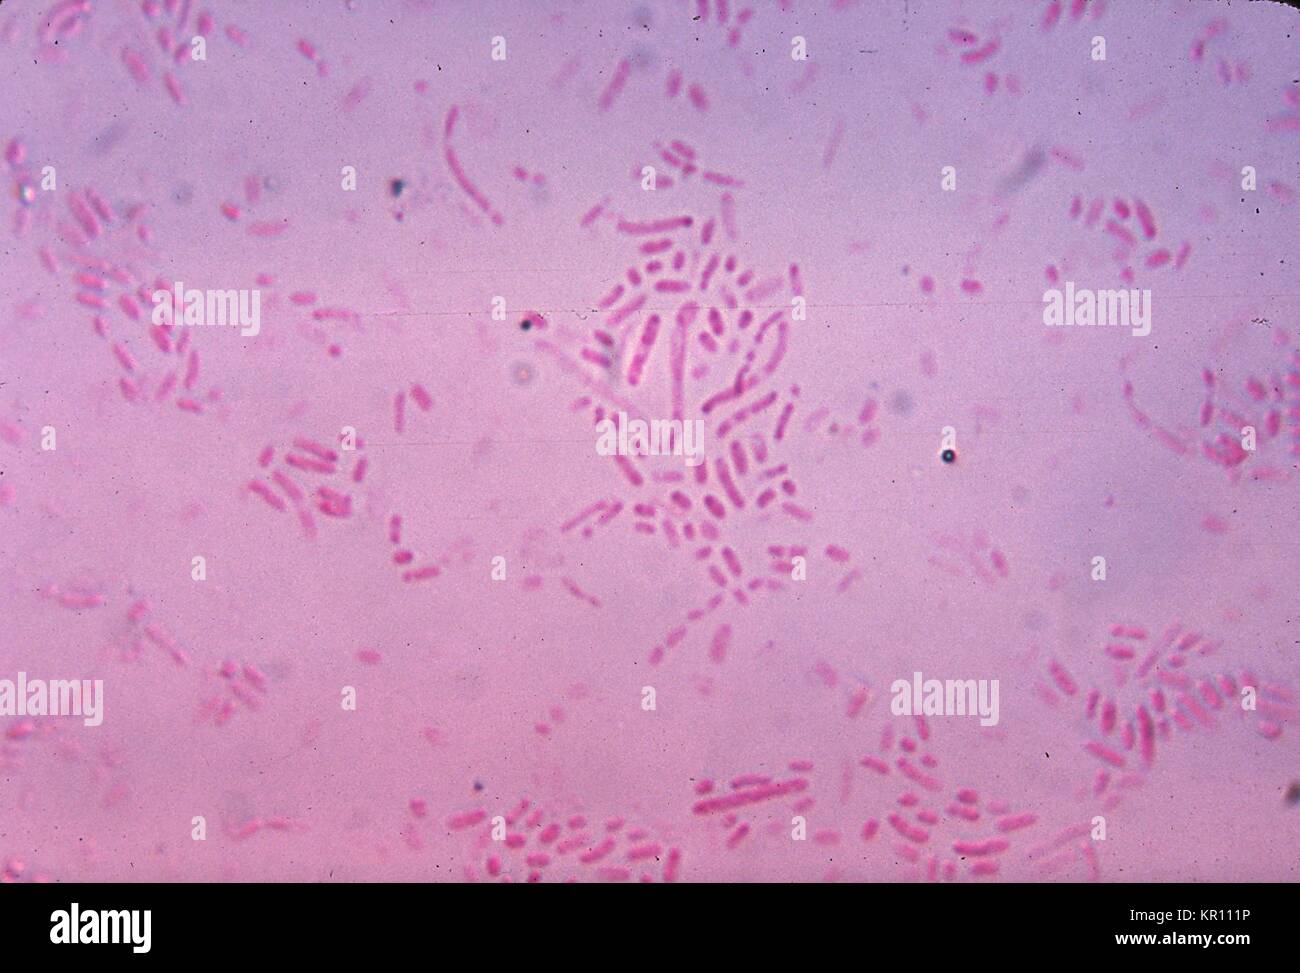 Diese photomicrograph zeigt Gram-negative Actinobacillus ureae, ehemals Pasteurella ureae Bakterien auf einem Nährboden für 24 Stunden gewachsen, 1971. Das Bakterium Actinobacillus ureae ist eine gemeinsame Einwohner des menschlichen Nasenrachenraum, und ist eine seltene Ursache der Meningitis bei geschwächten, immunsupprimierte Patienten, d. h. Beihilfen, langfristige Chemotherapie, etc. Mit freundlicher Genehmigung CDC/Dr. Robert Weber. Stockfoto